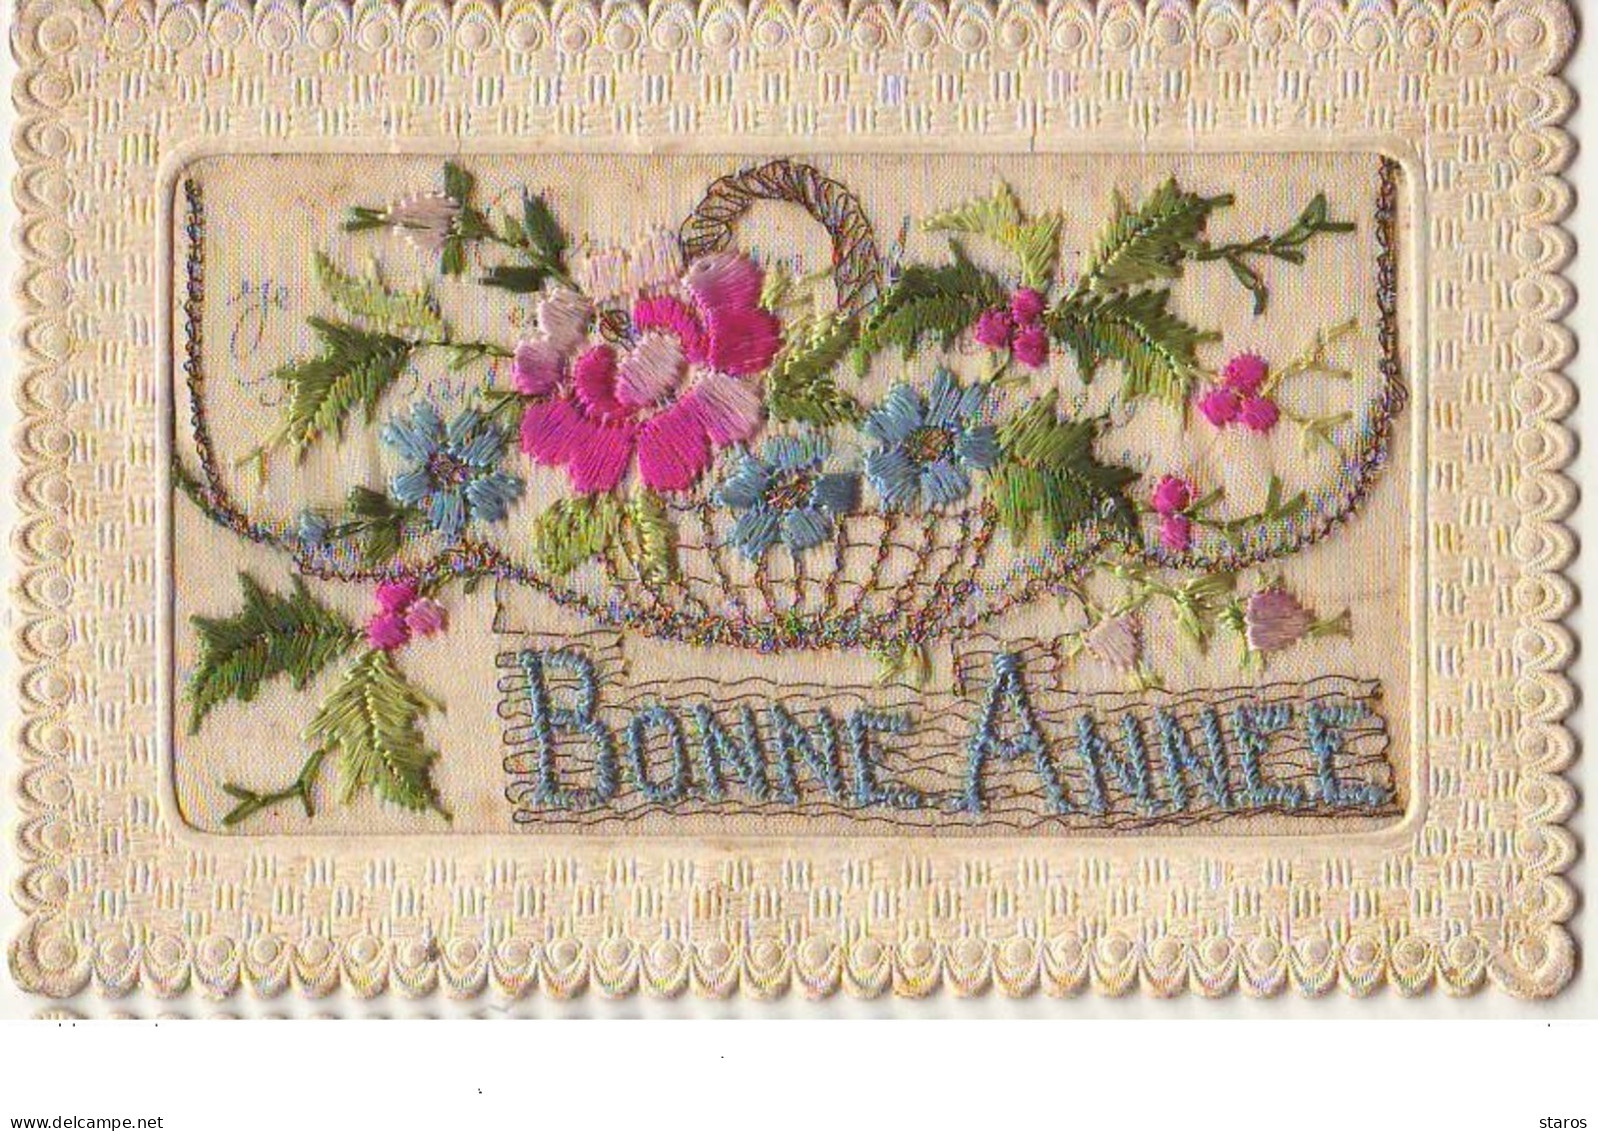 Carte Brodée - Bonne Année - Panier Rempli De Fleurs - Embroidered